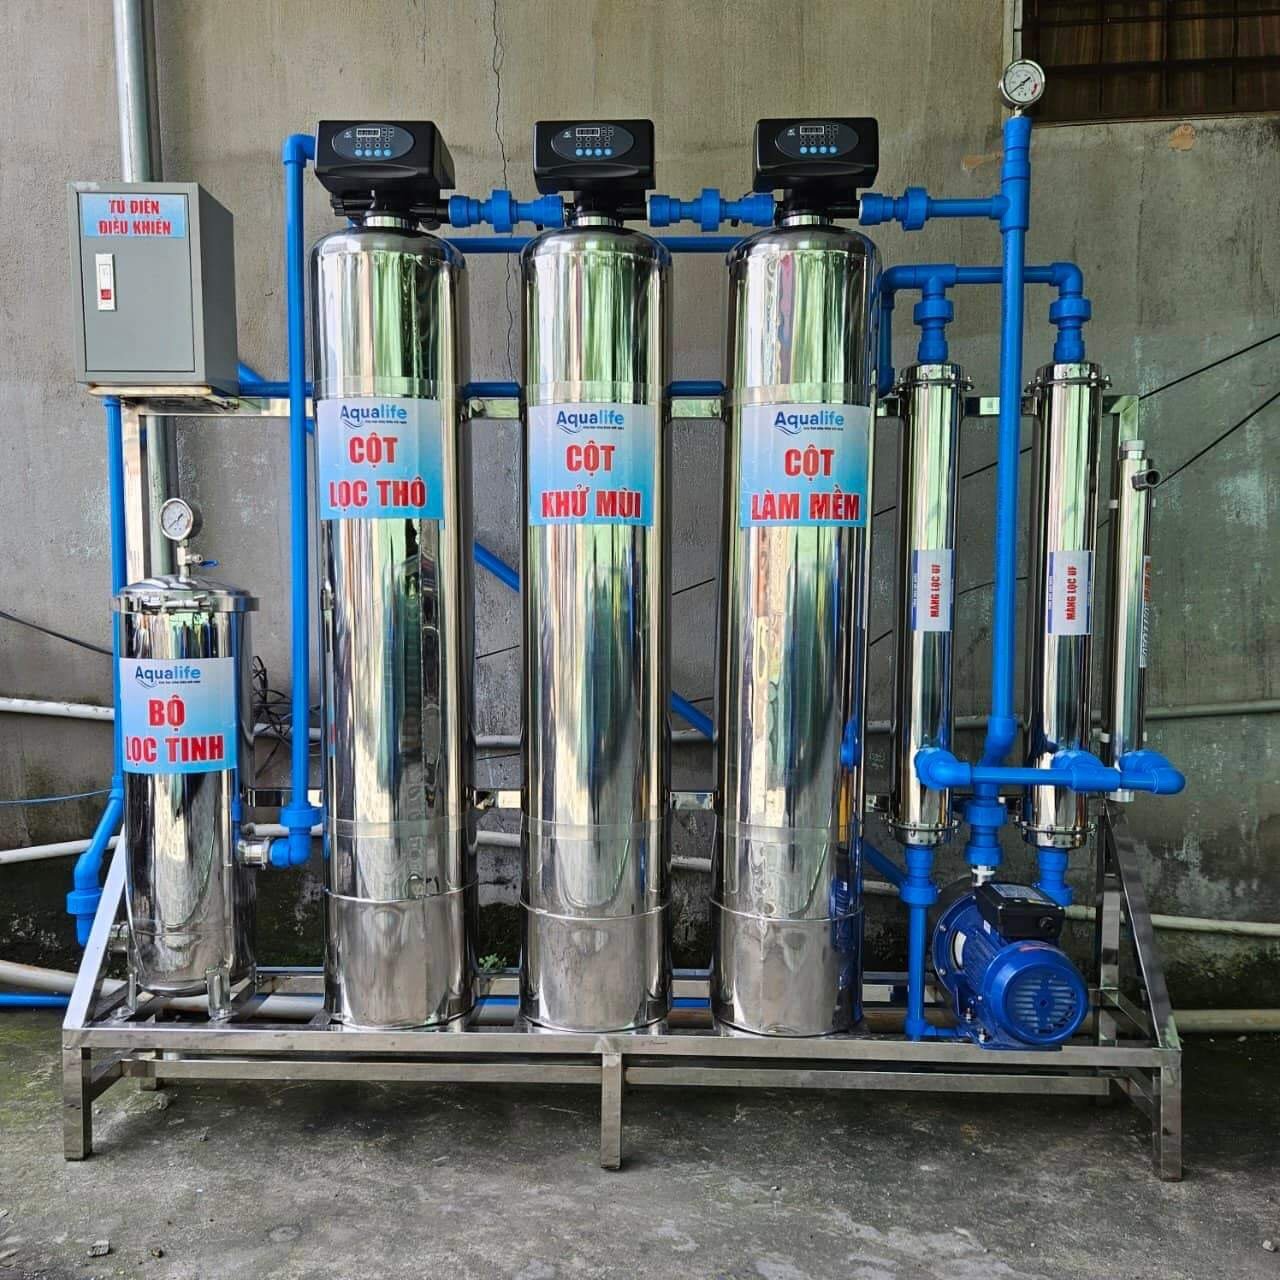 Baotriso1 cam kết lắp máy lọc nước tổng Biệt thự uy tín, chất lượng đạt chuẩn BYT